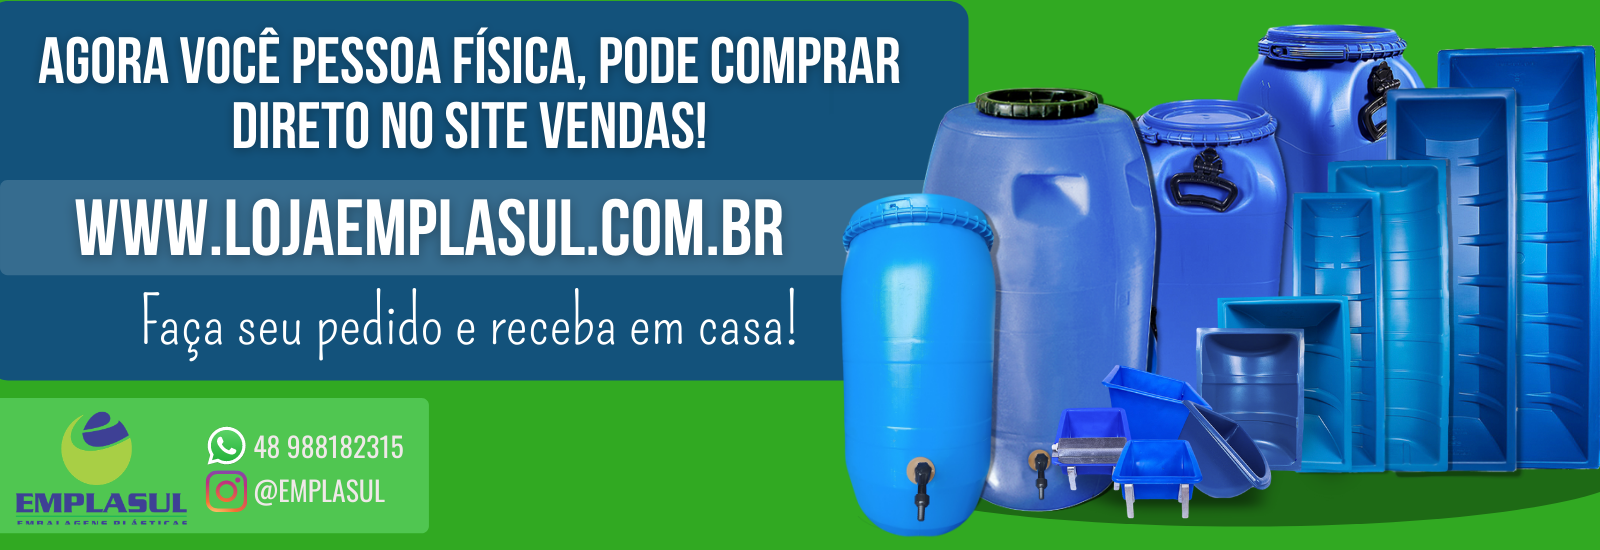 www.lojaemplasul.com.br